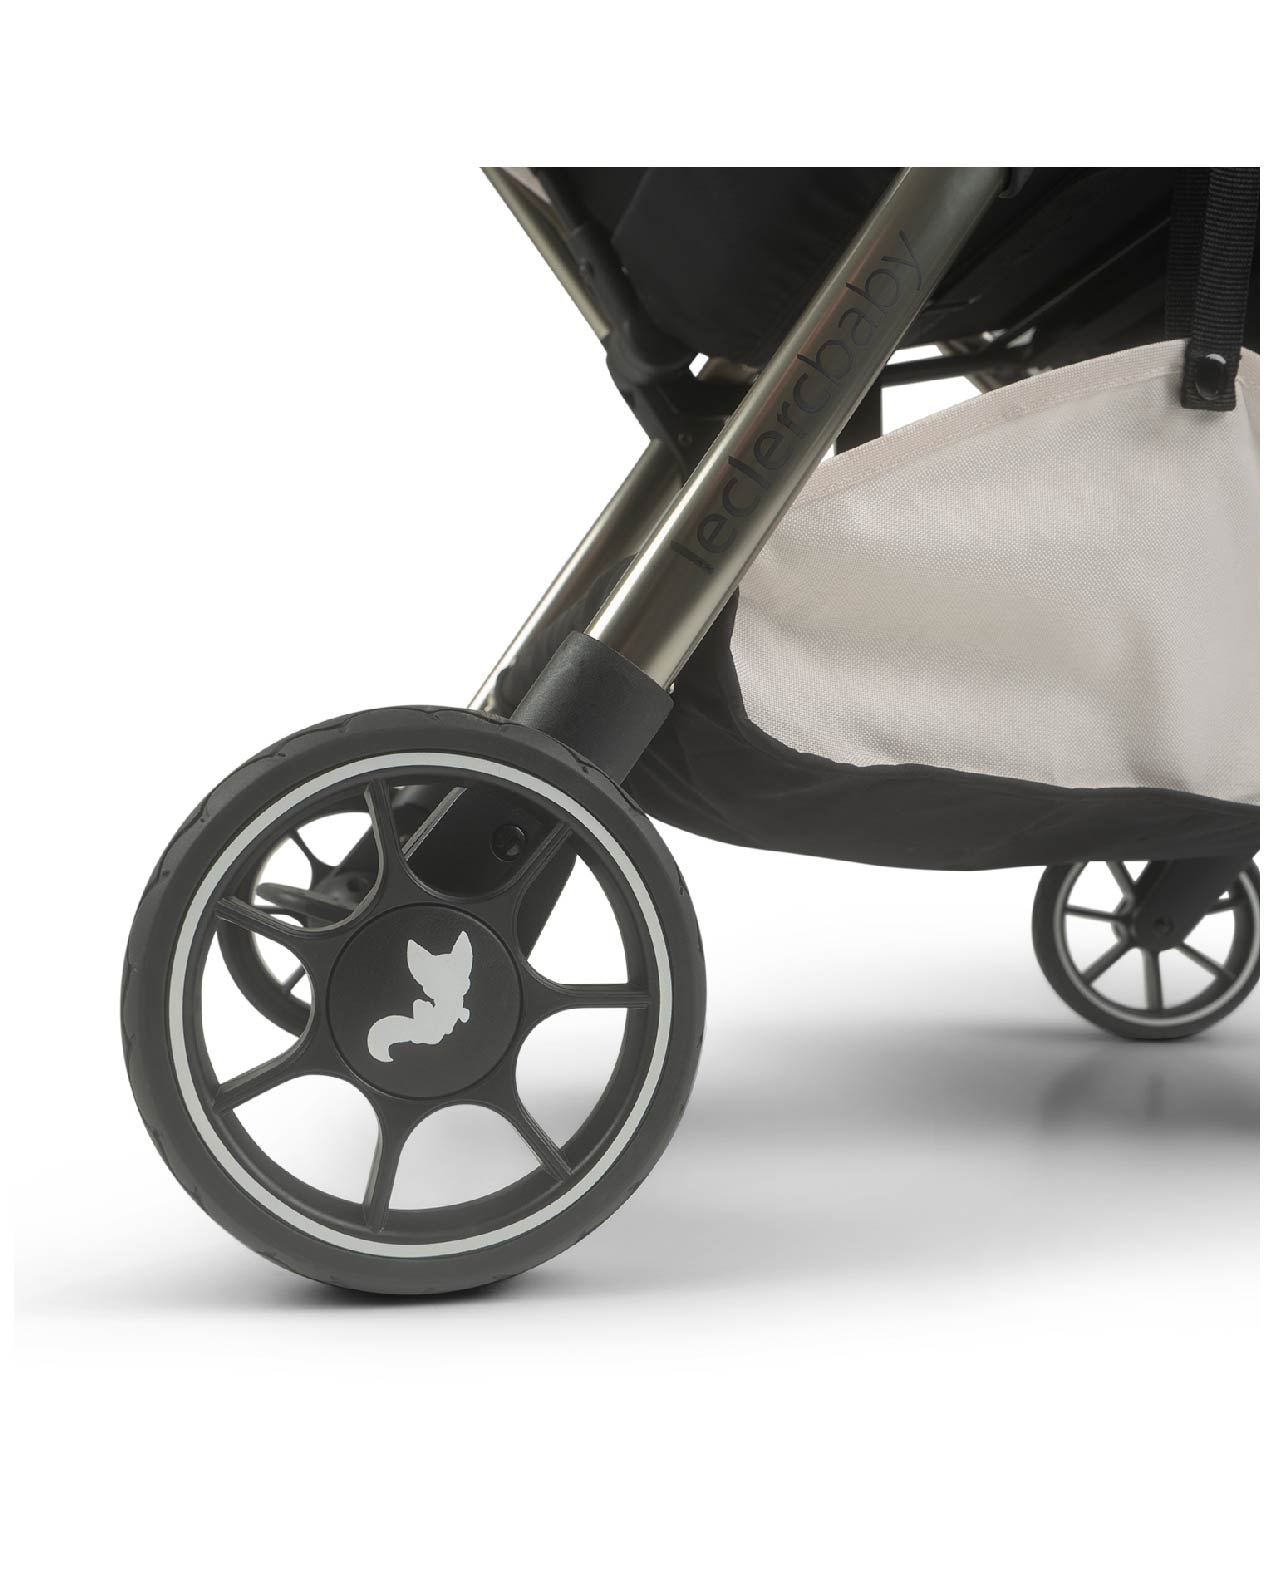 Influencer Air Twin Stroller Bundle : Golden Mustard Stroller + Cloudy Cream Stroller